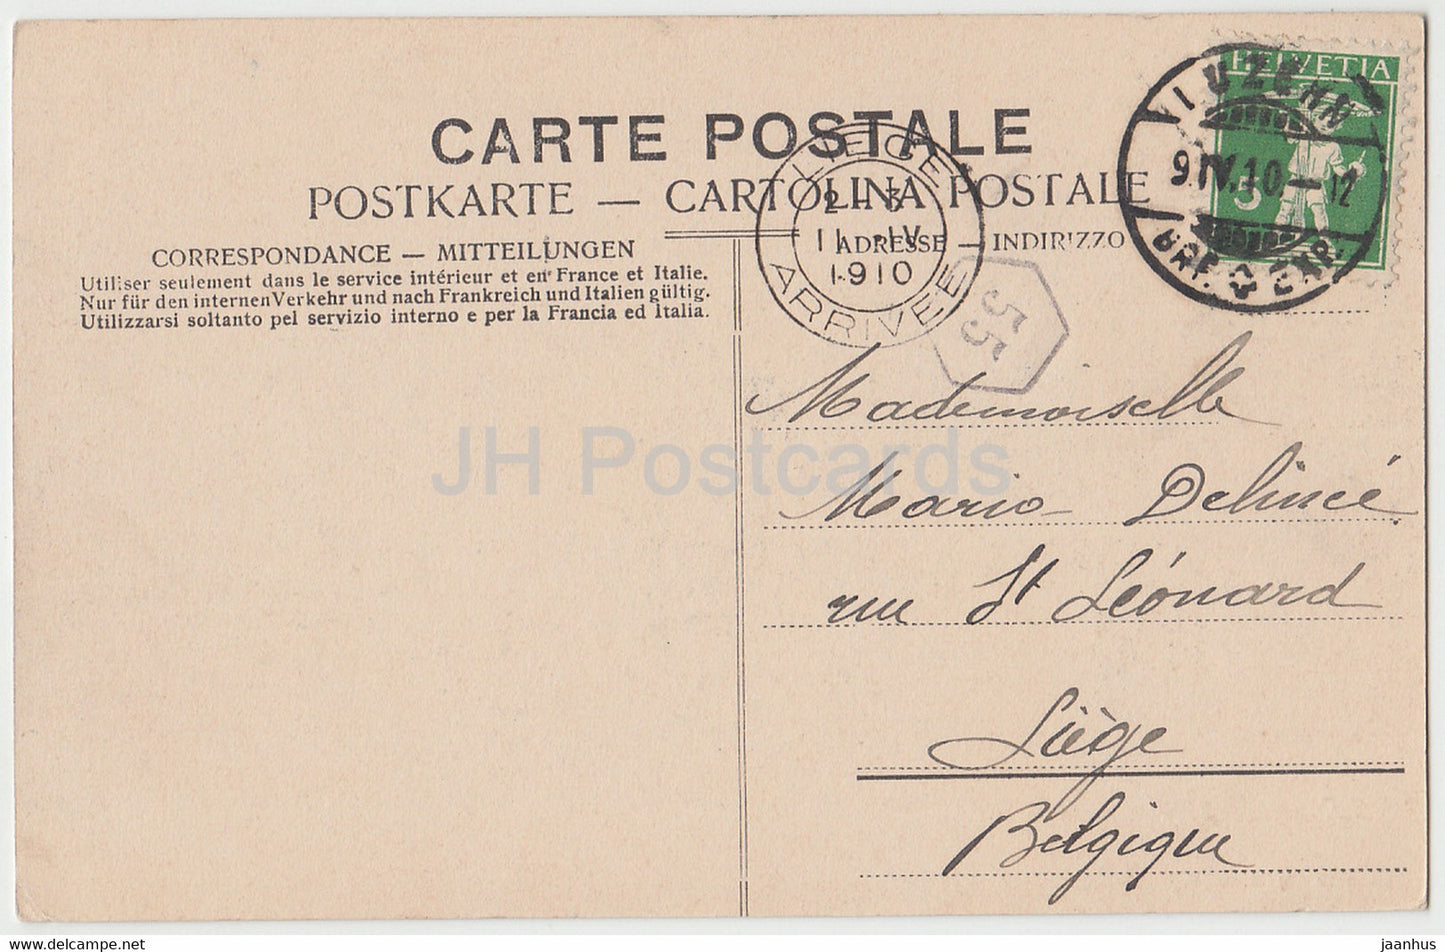 Luzern - Lucerne - Schweizerhofquai - steamer - ship - old postcard - 1910 - Switzerland - used